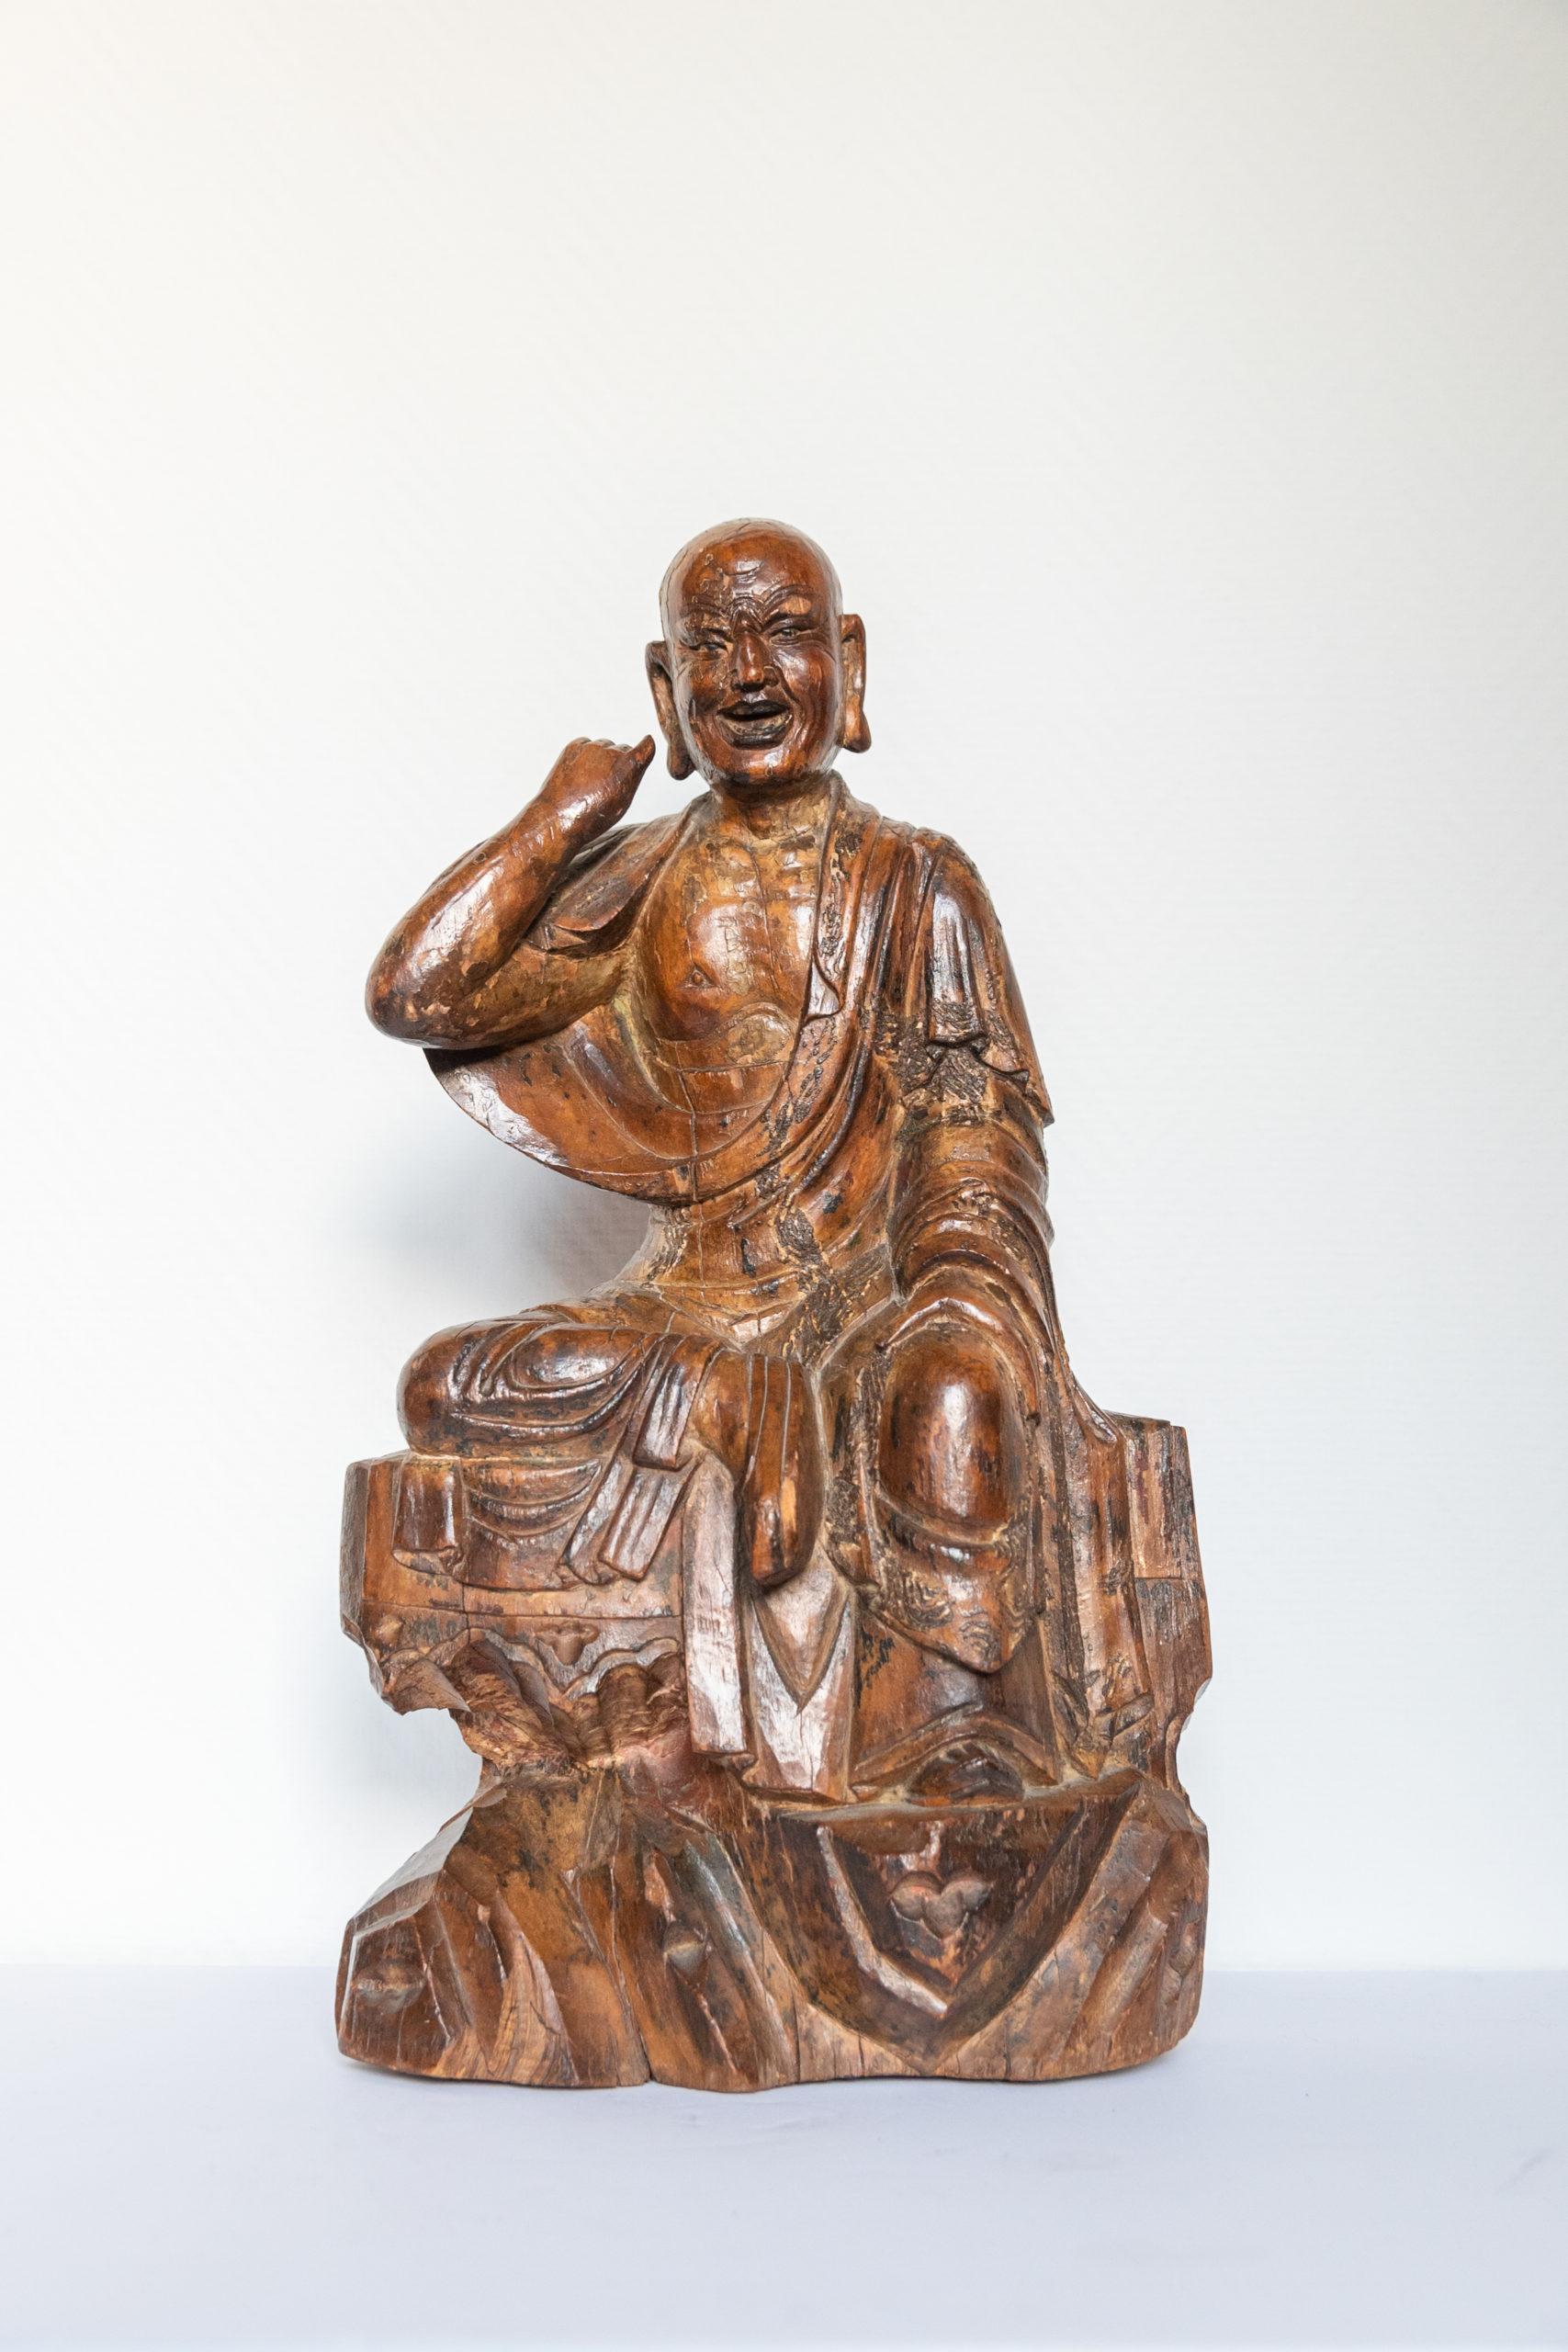 Sculpture-bois-art-asie-ming-moine-aurore-morisse-affaire-conclue-chine-objet-antiquité-antiquaire-liège-chestret51